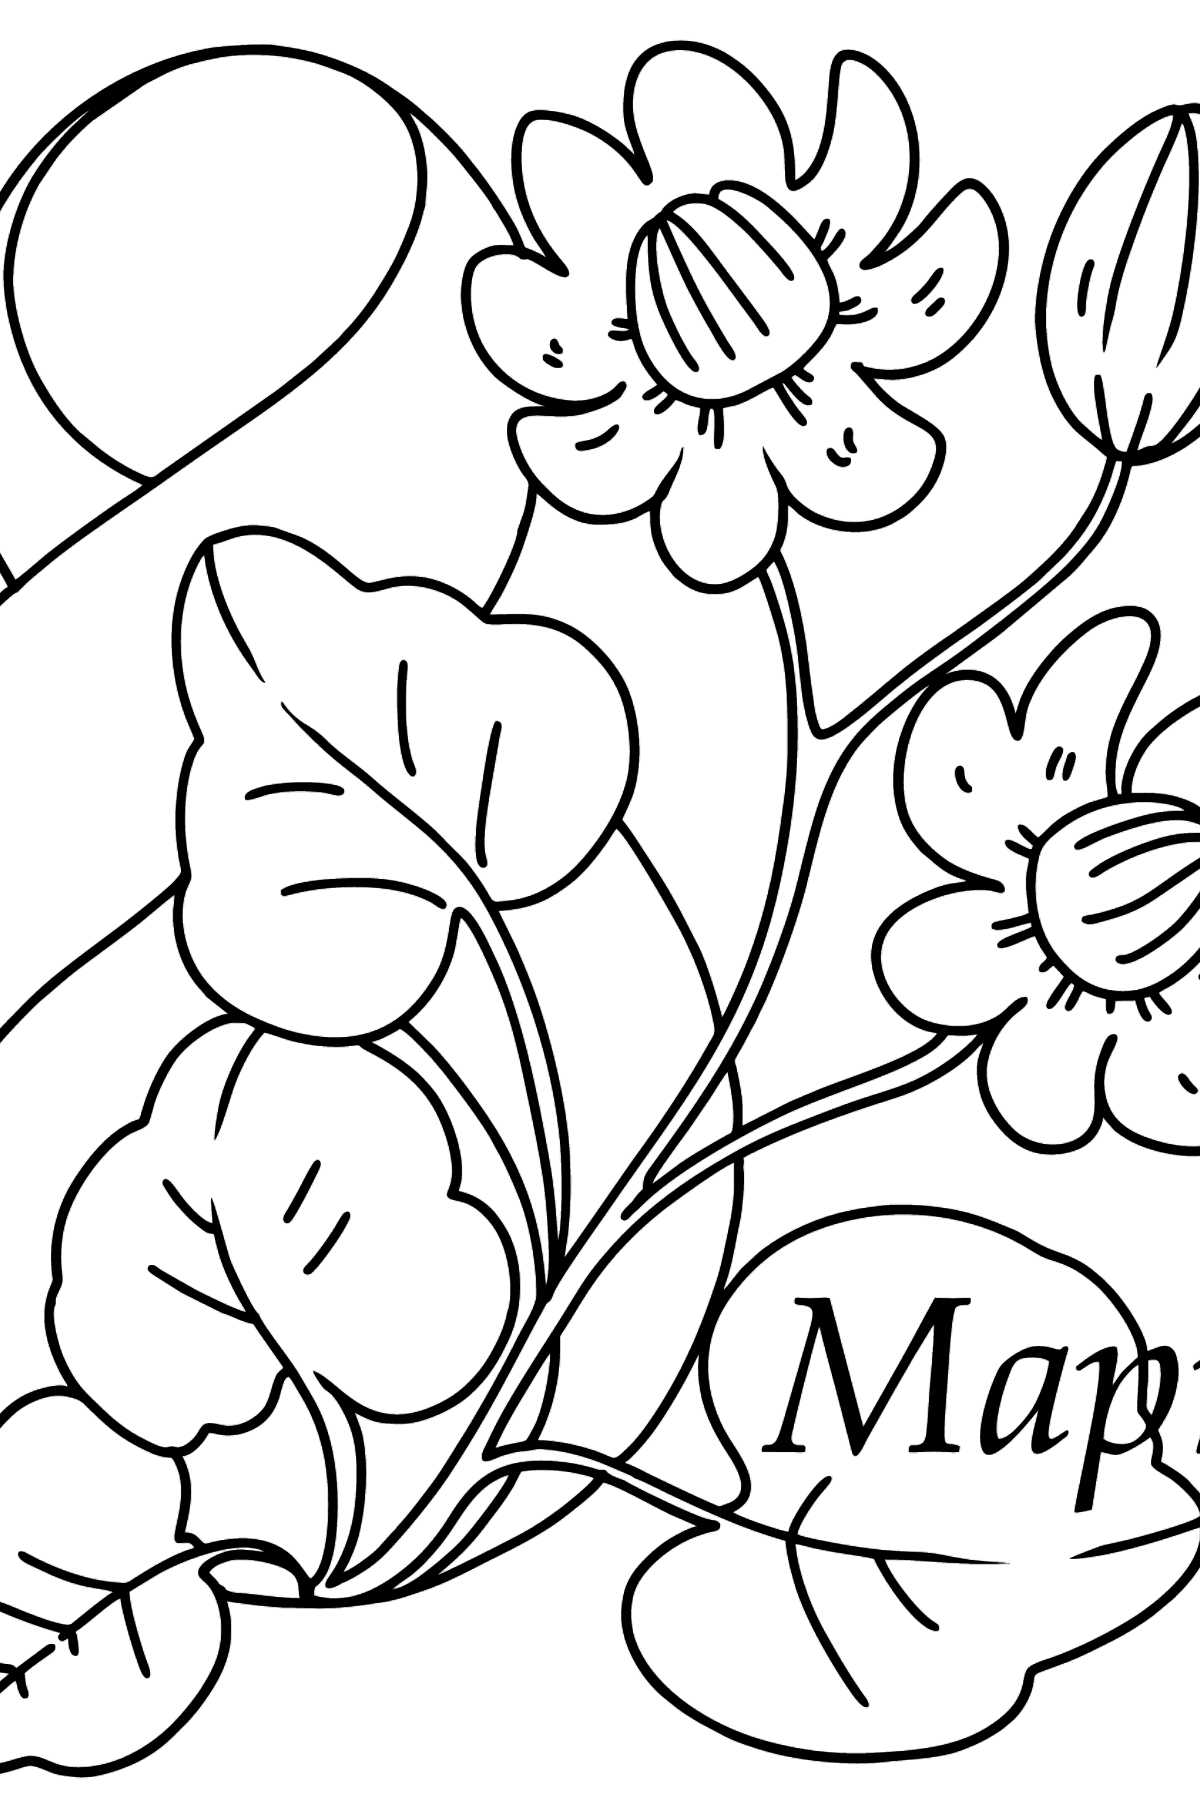 Раскраска цветы к 8 марта - Картинки для Детей